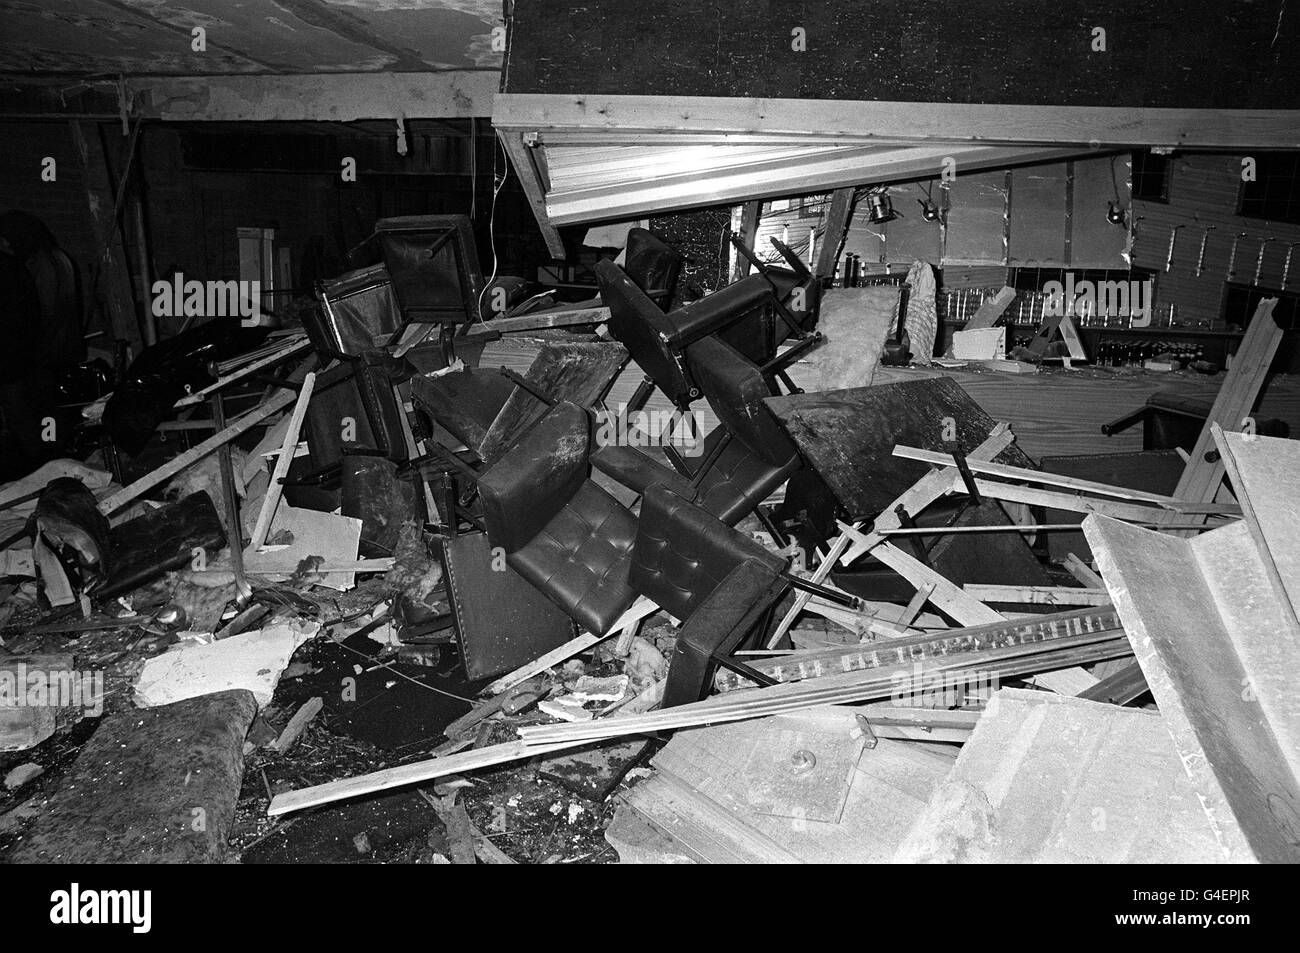 PA NEWS PHOTO 7/12/82 LA SCÈNE DE LA DÉVASTATION À LA BOMBE À L'ROPPIN "BIEN" pub-discothèque de Ballykelly, Londonderry, Irlande Banque D'Images